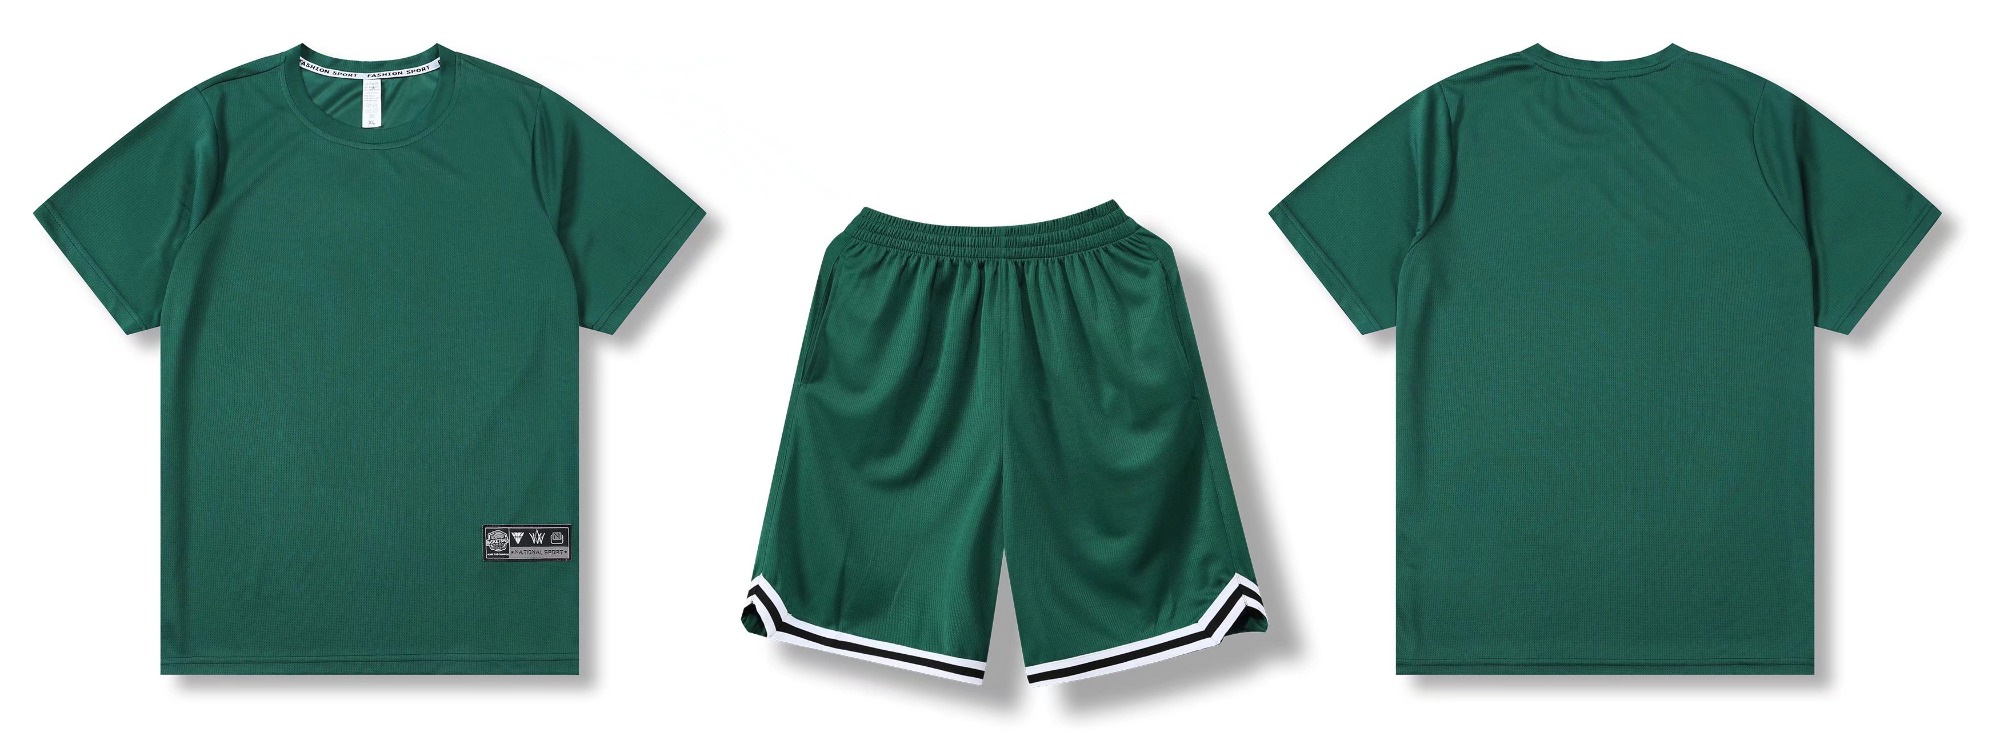 Popular Design Fashion Sportswear Sports Green  Activewear Casual Uniform-YW